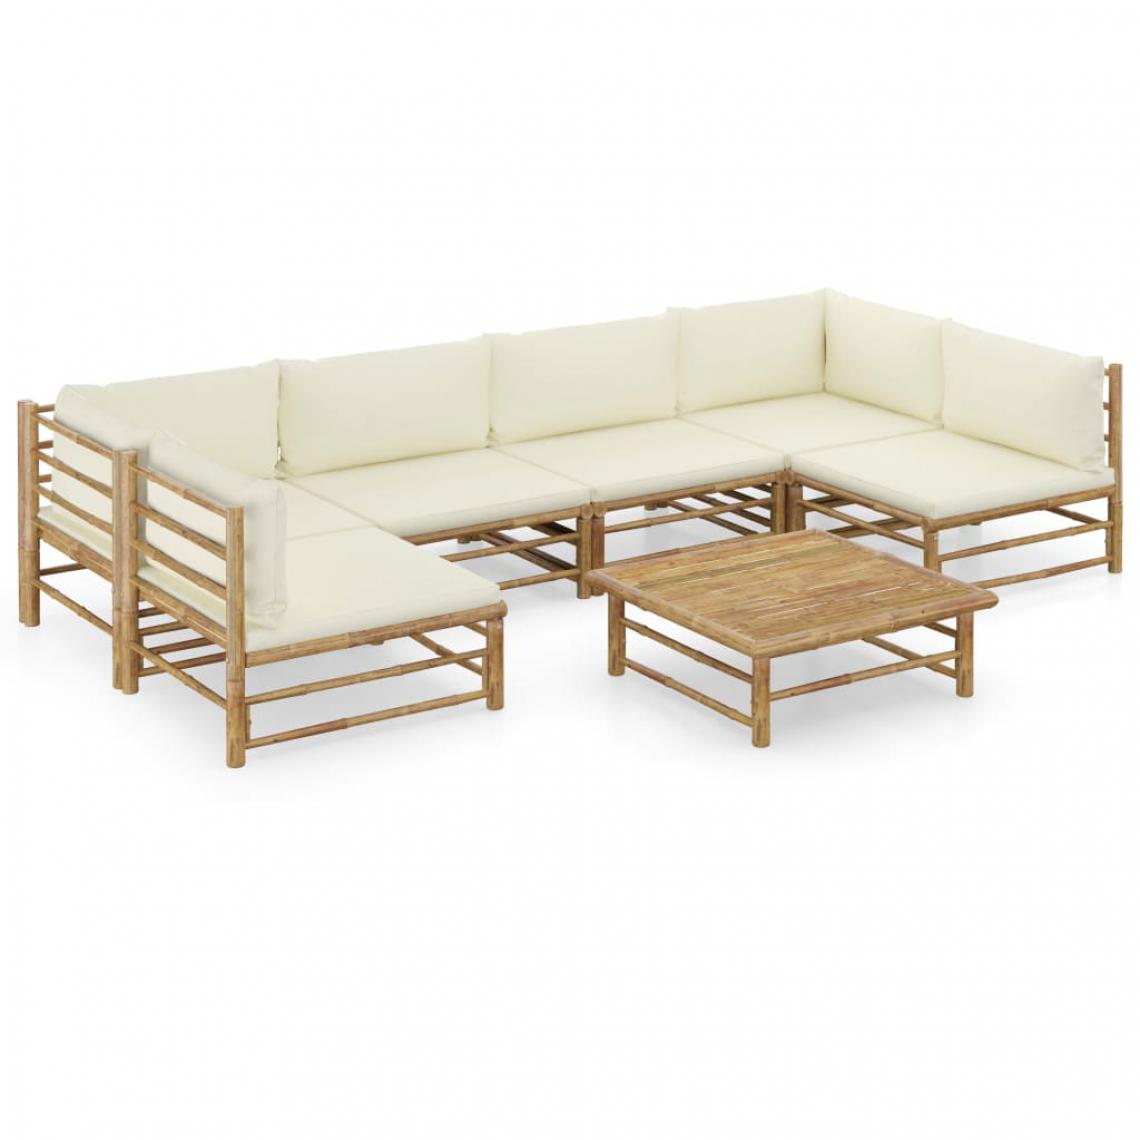 Chunhelife - Chunhelife Salon de jardin 7 pcs avec coussins blanc crème Bambou - Ensembles canapés et fauteuils